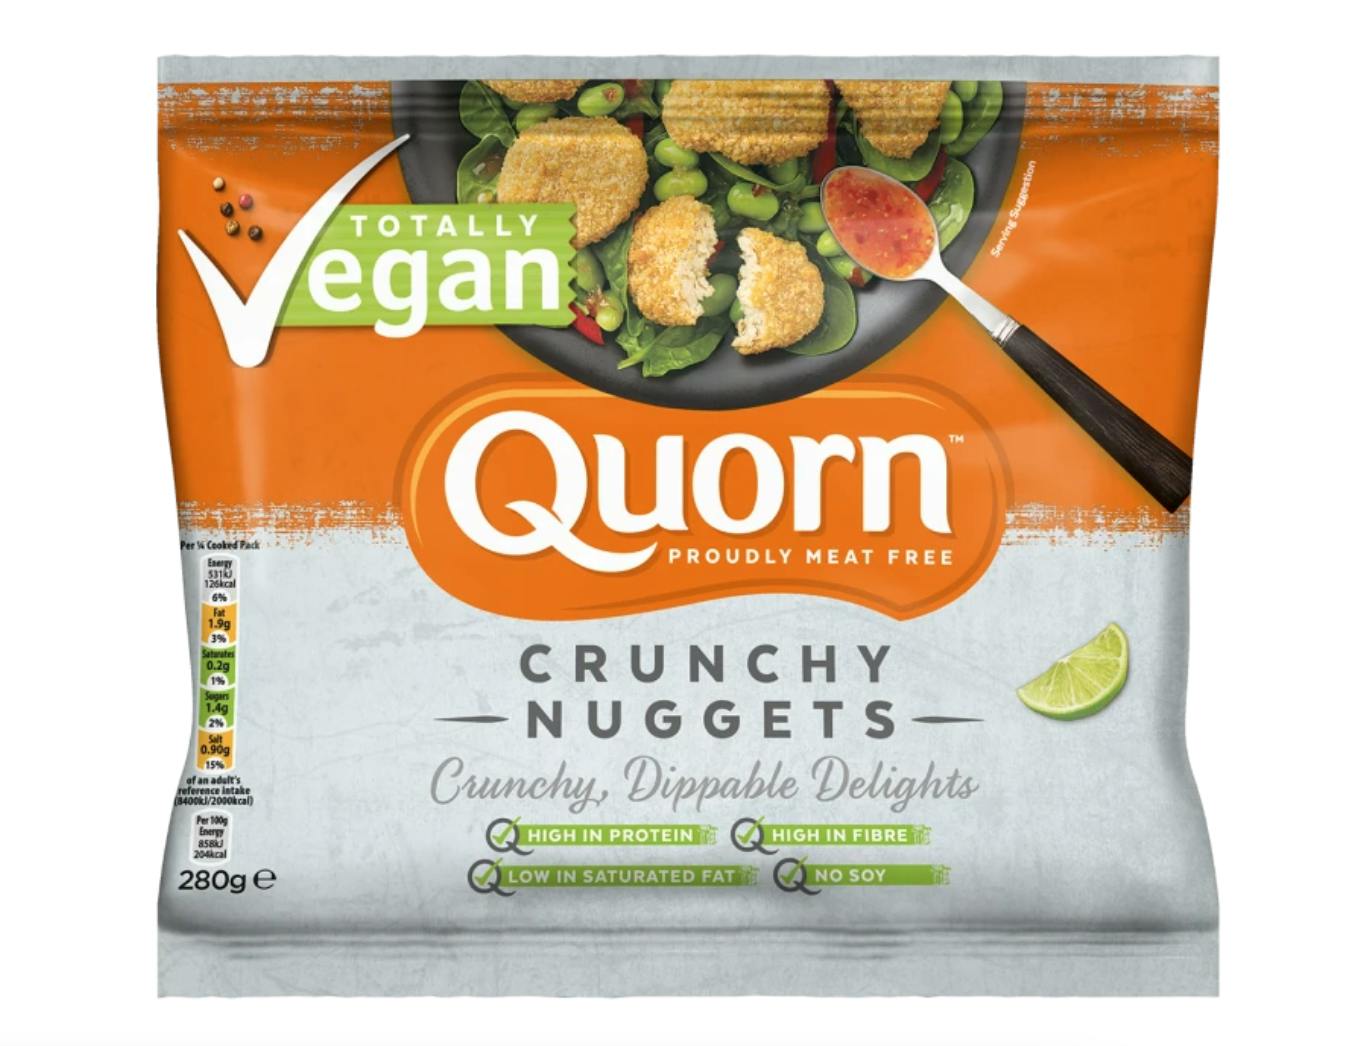 Quorn vegan nuggets pack